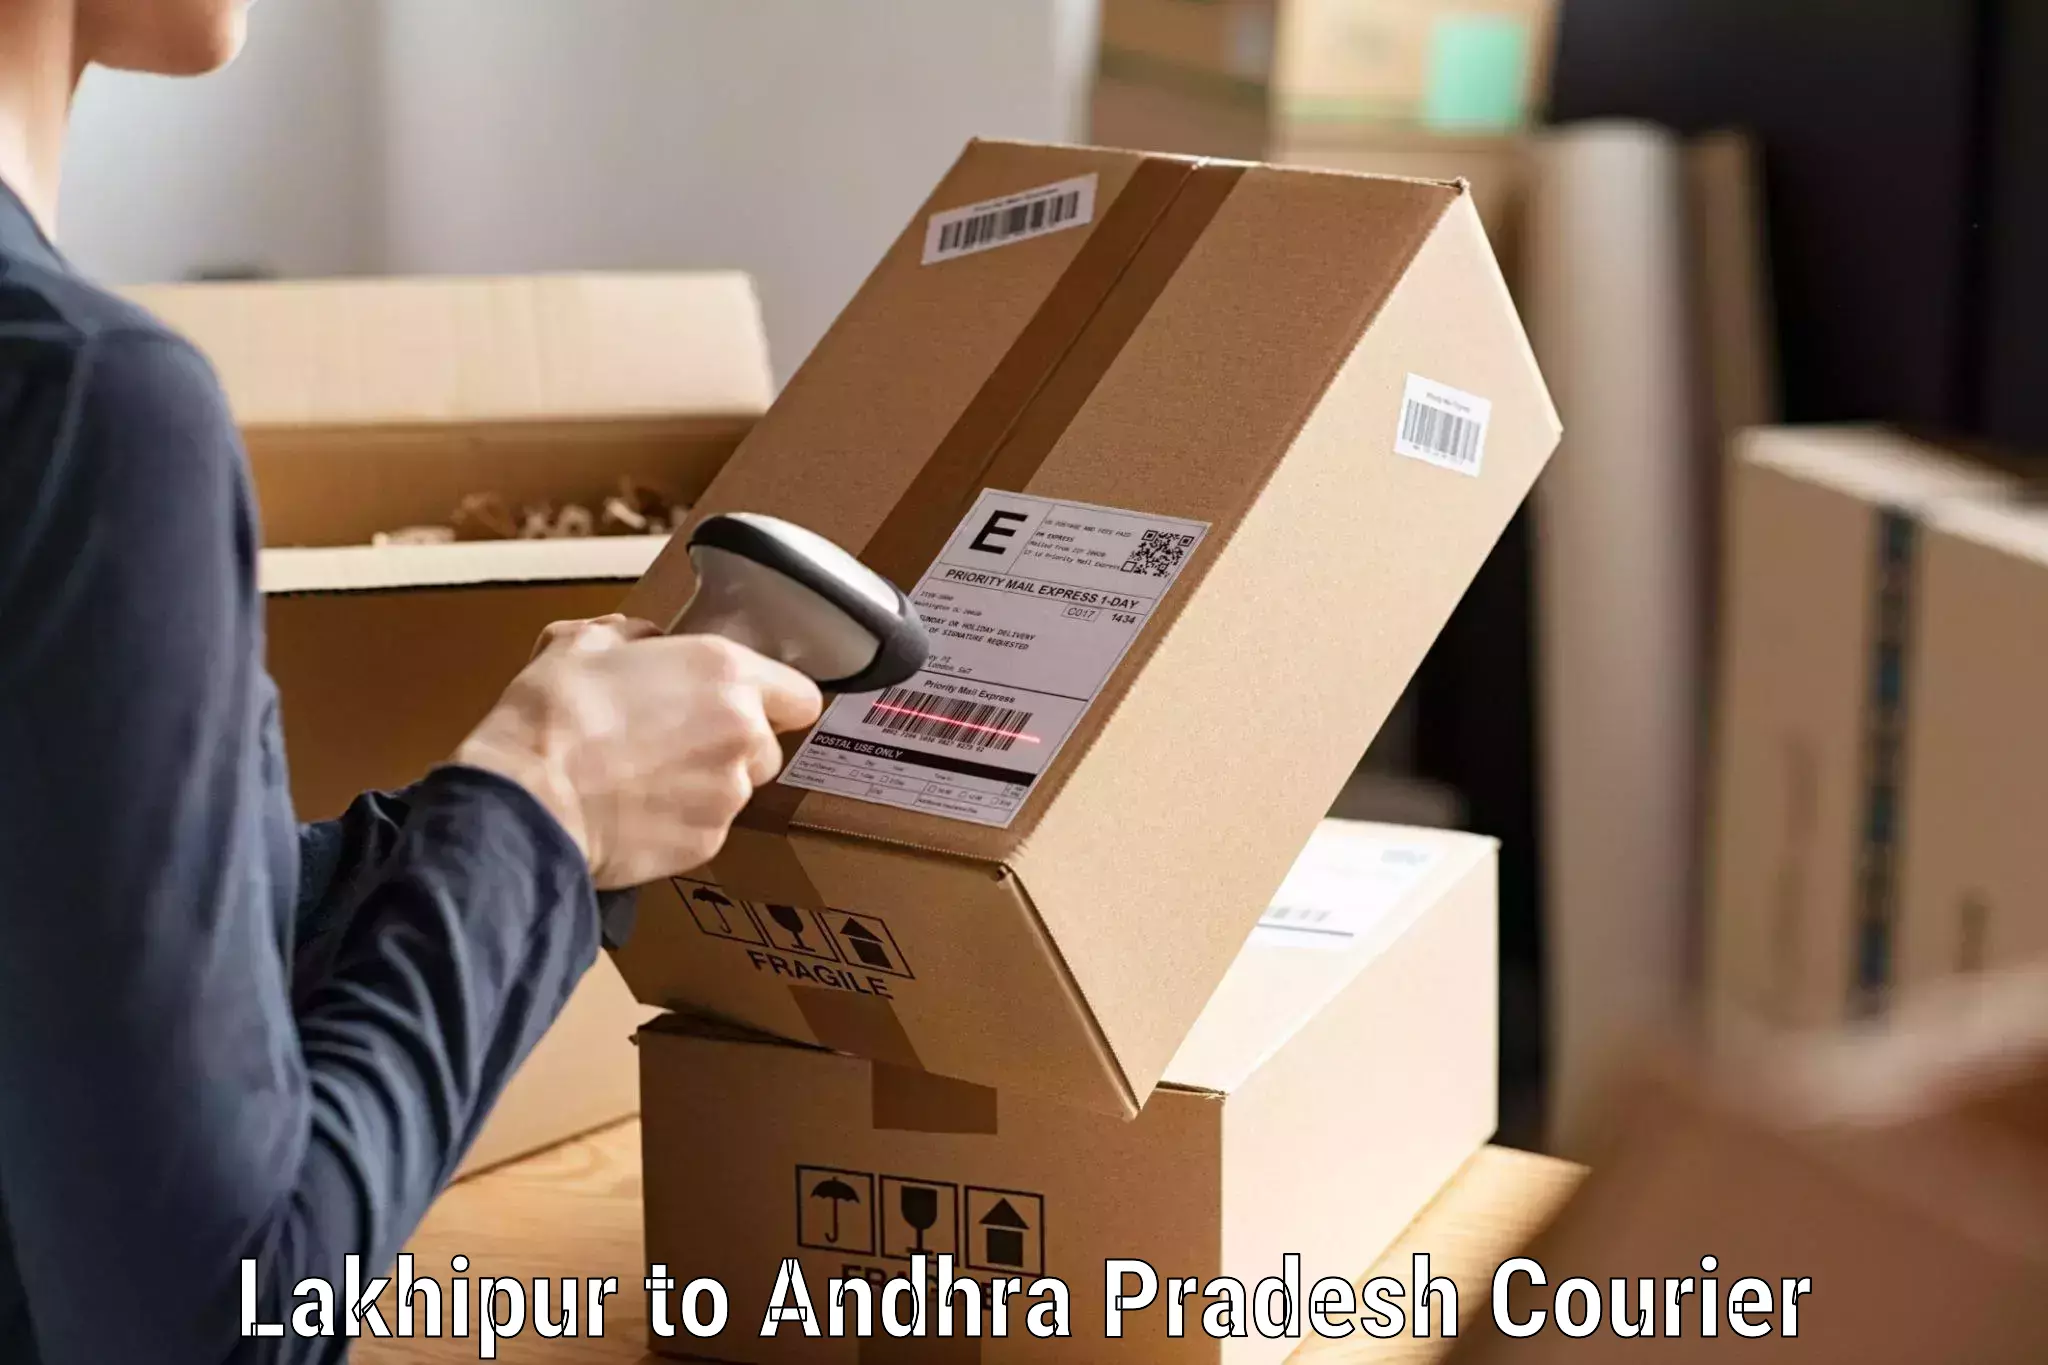 Digital courier platforms Lakhipur to Podalakur